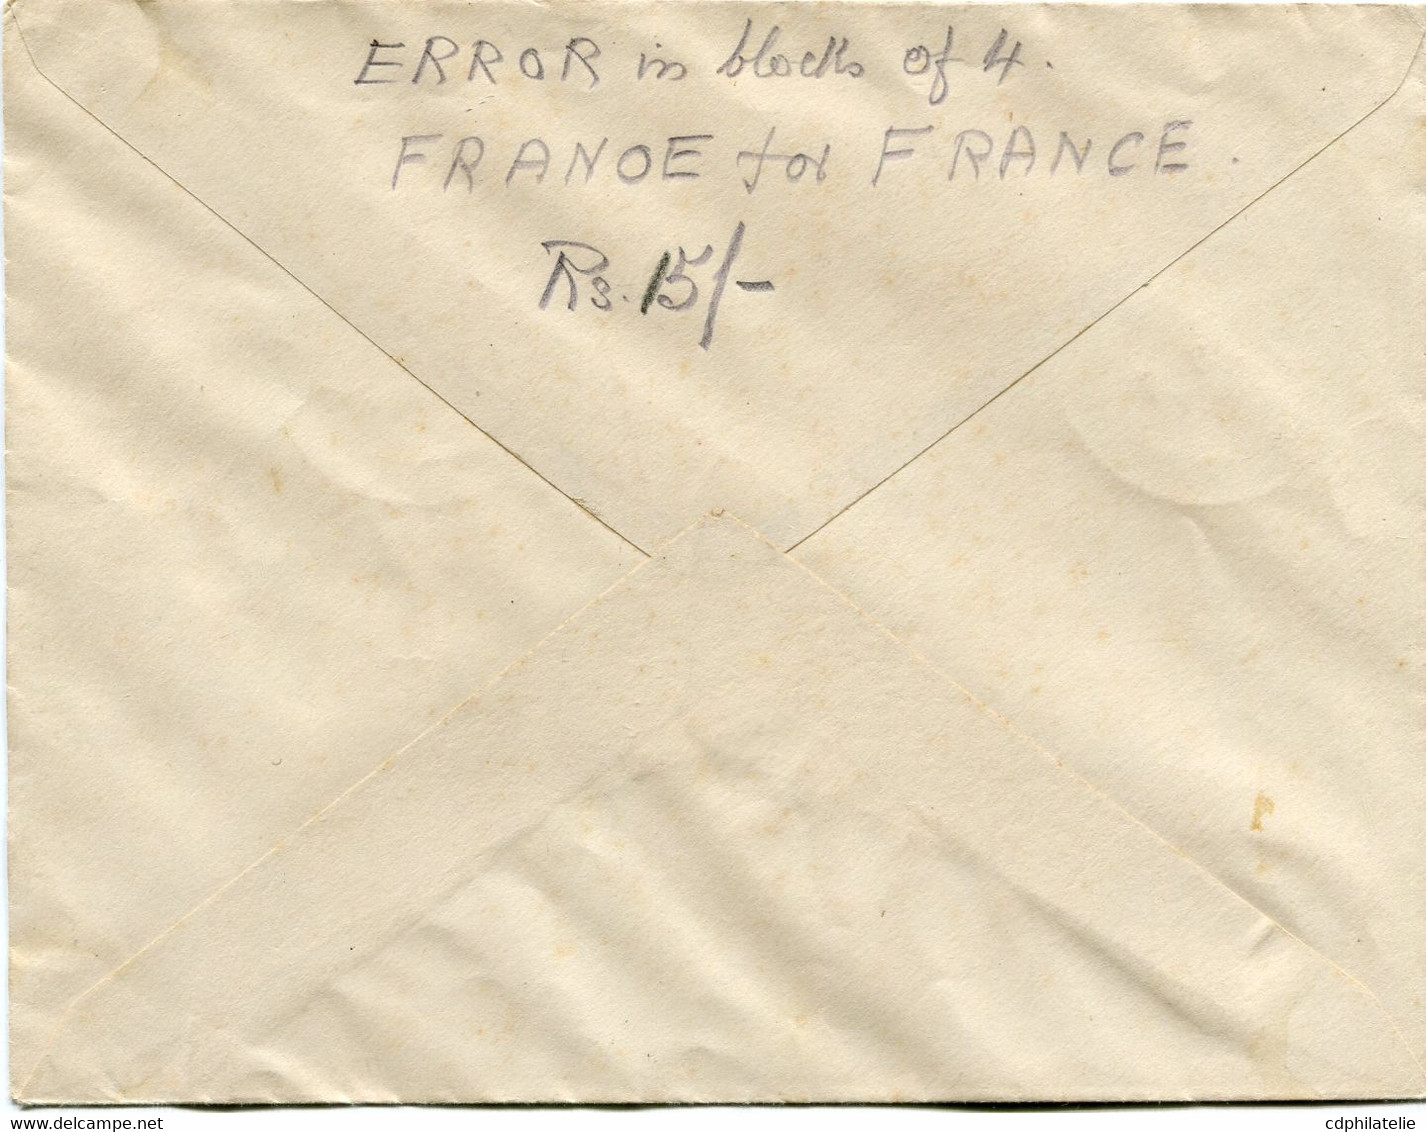 INDE FRANCAISE FRANCE LIBRE LETTRE AFFRANCHIE AVEC UN BLOC DE 4 AVEC VARIETE "FRANOE" DEPART INDE...5-8-1944 PONDICHERY - Covers & Documents